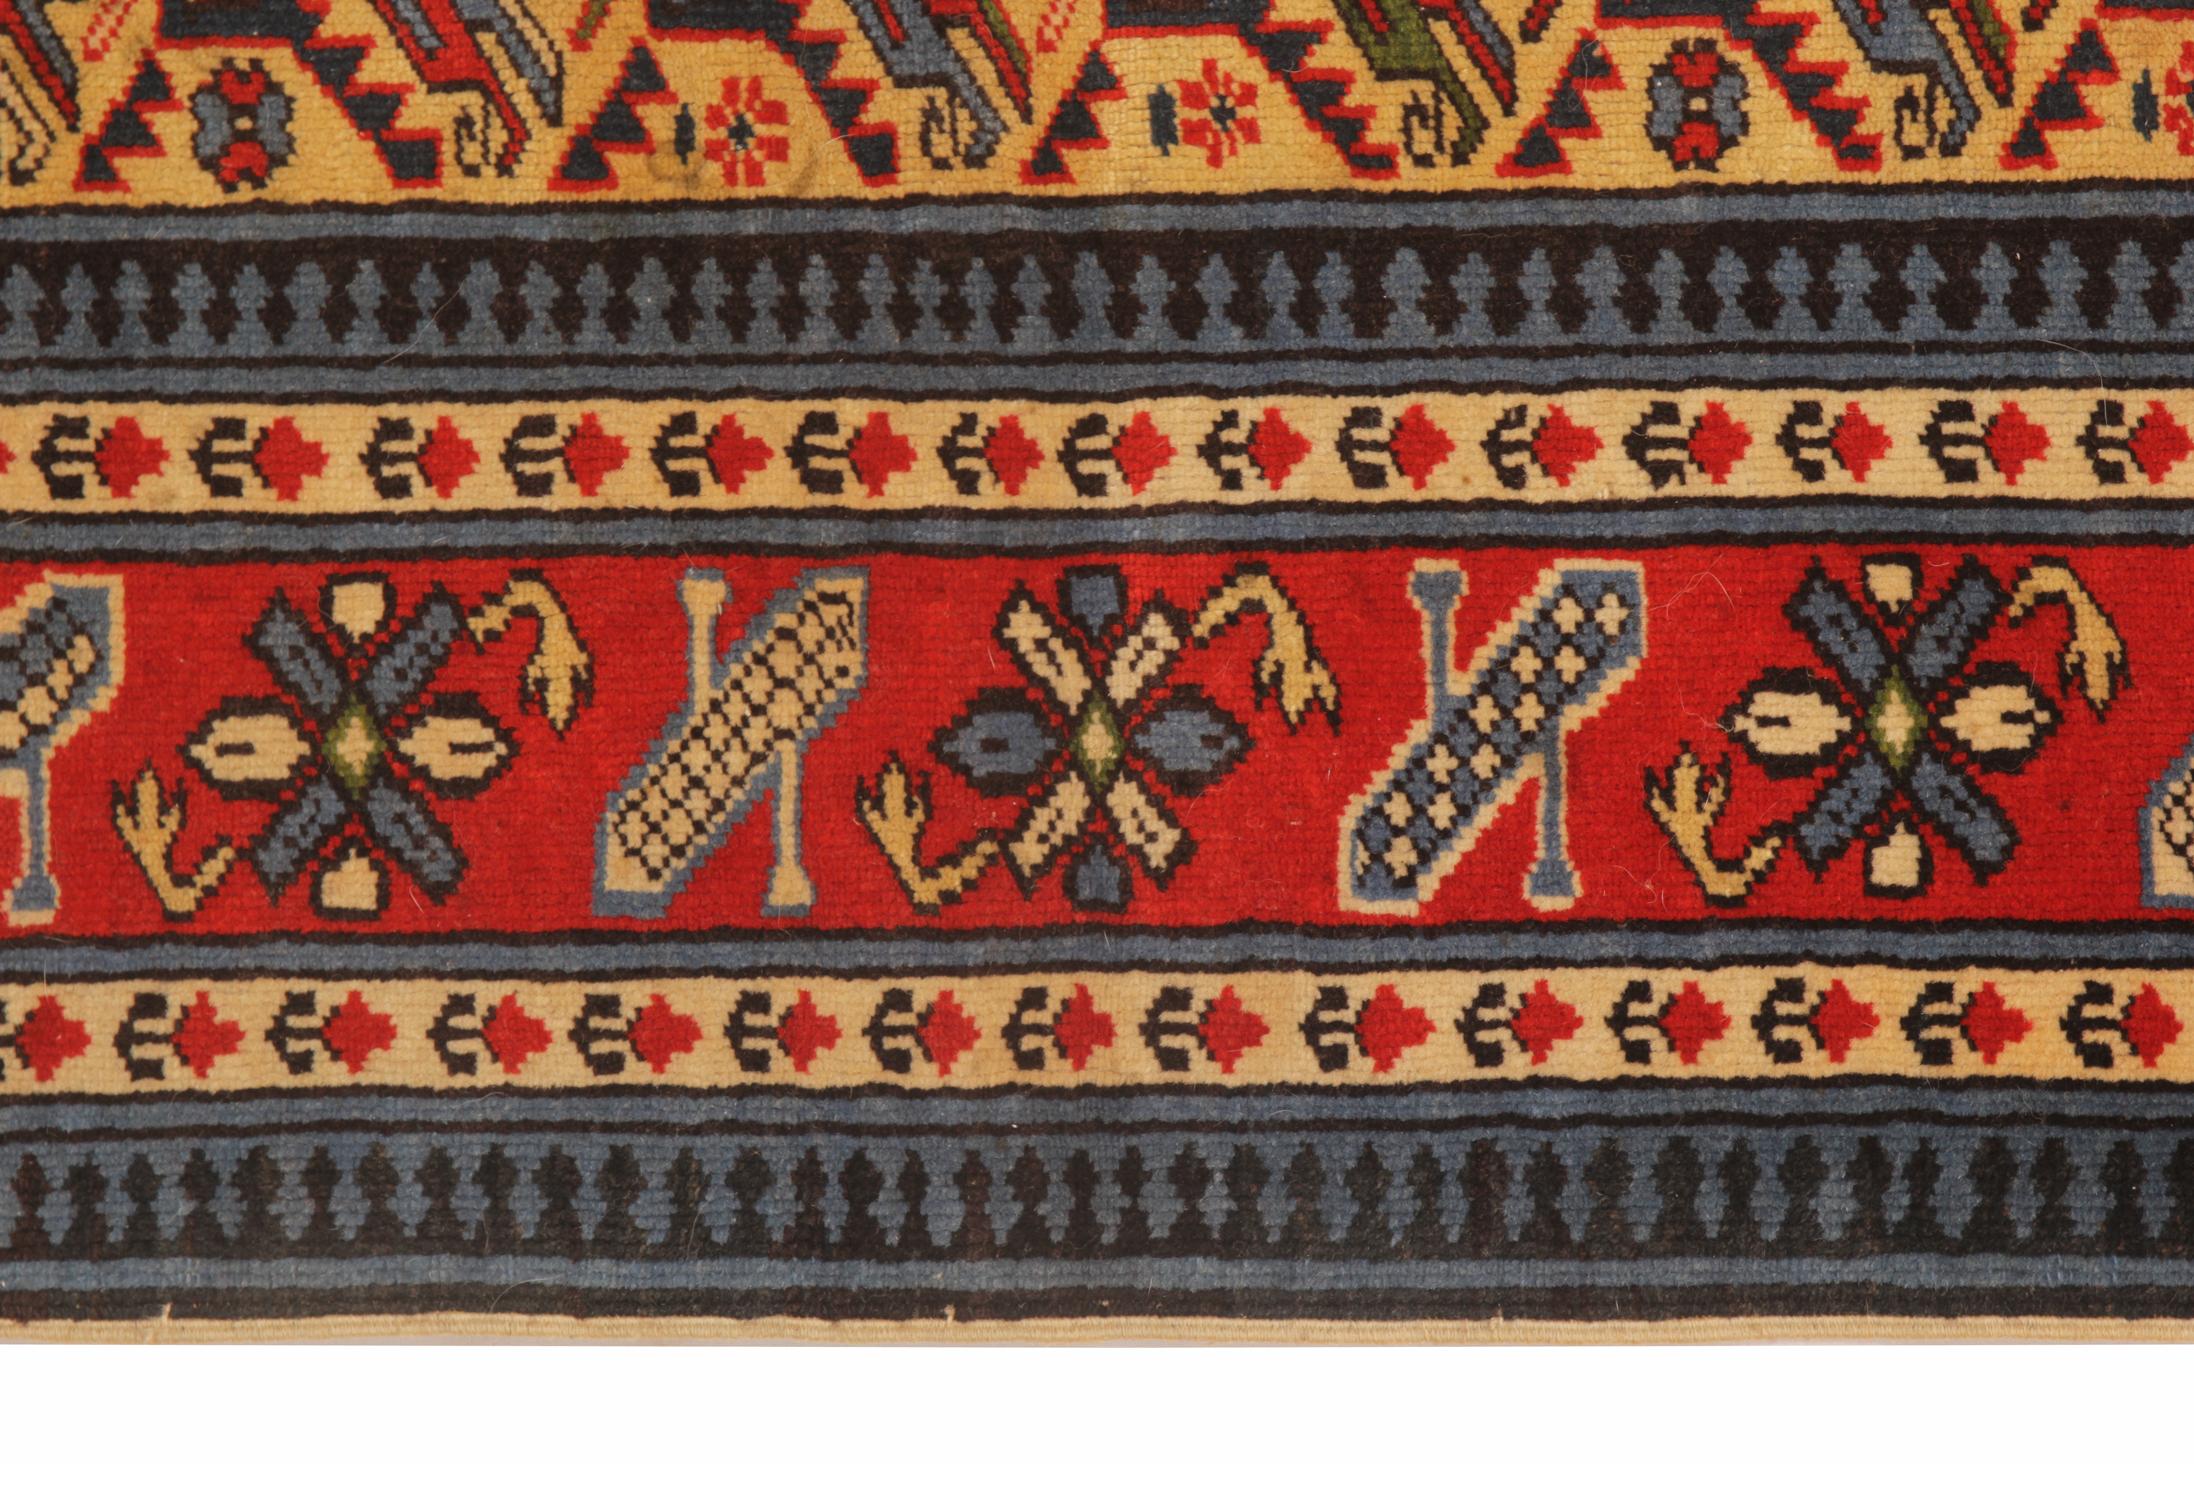 Dieser rot-blaue Vintage-Teppich aus Schirwan ist ein kleiner traditioneller rot-blauer Teppich. Wir zeigen ein sich wiederholendes zentrales Muster auf einem orange/gelben Hintergrund, der von einer mehrschichtigen Blumenmotiv-Bordüre umgeben ist.